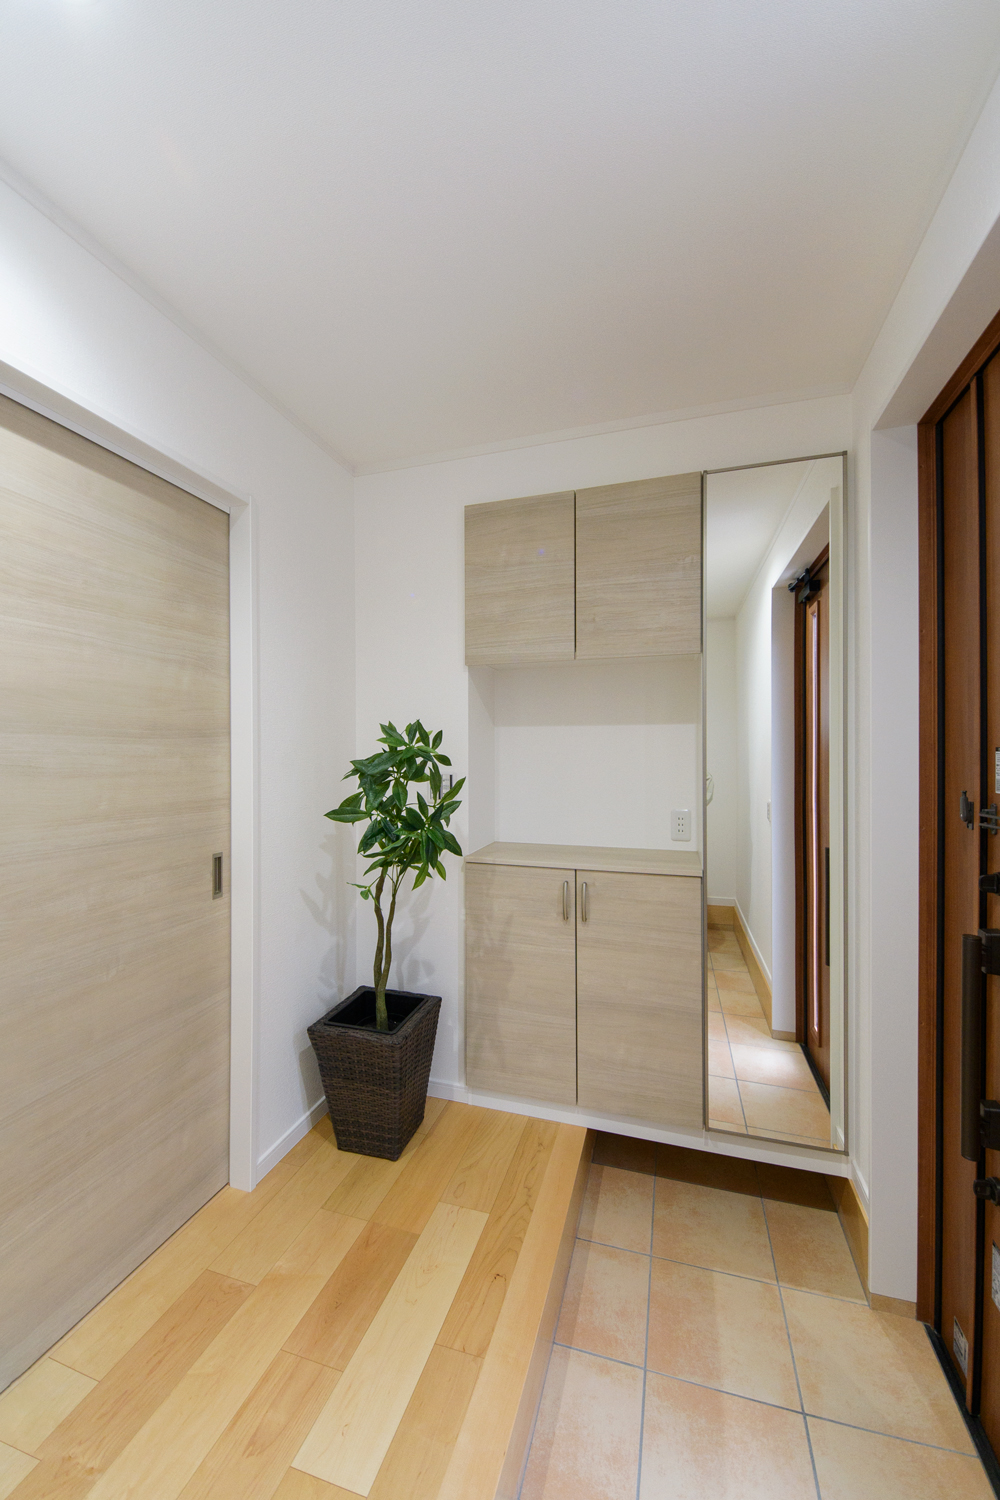 木の温もり感じる玄関ドアと収納、ベージュのテラコッタ調タイルが穏やかな空間を演出。